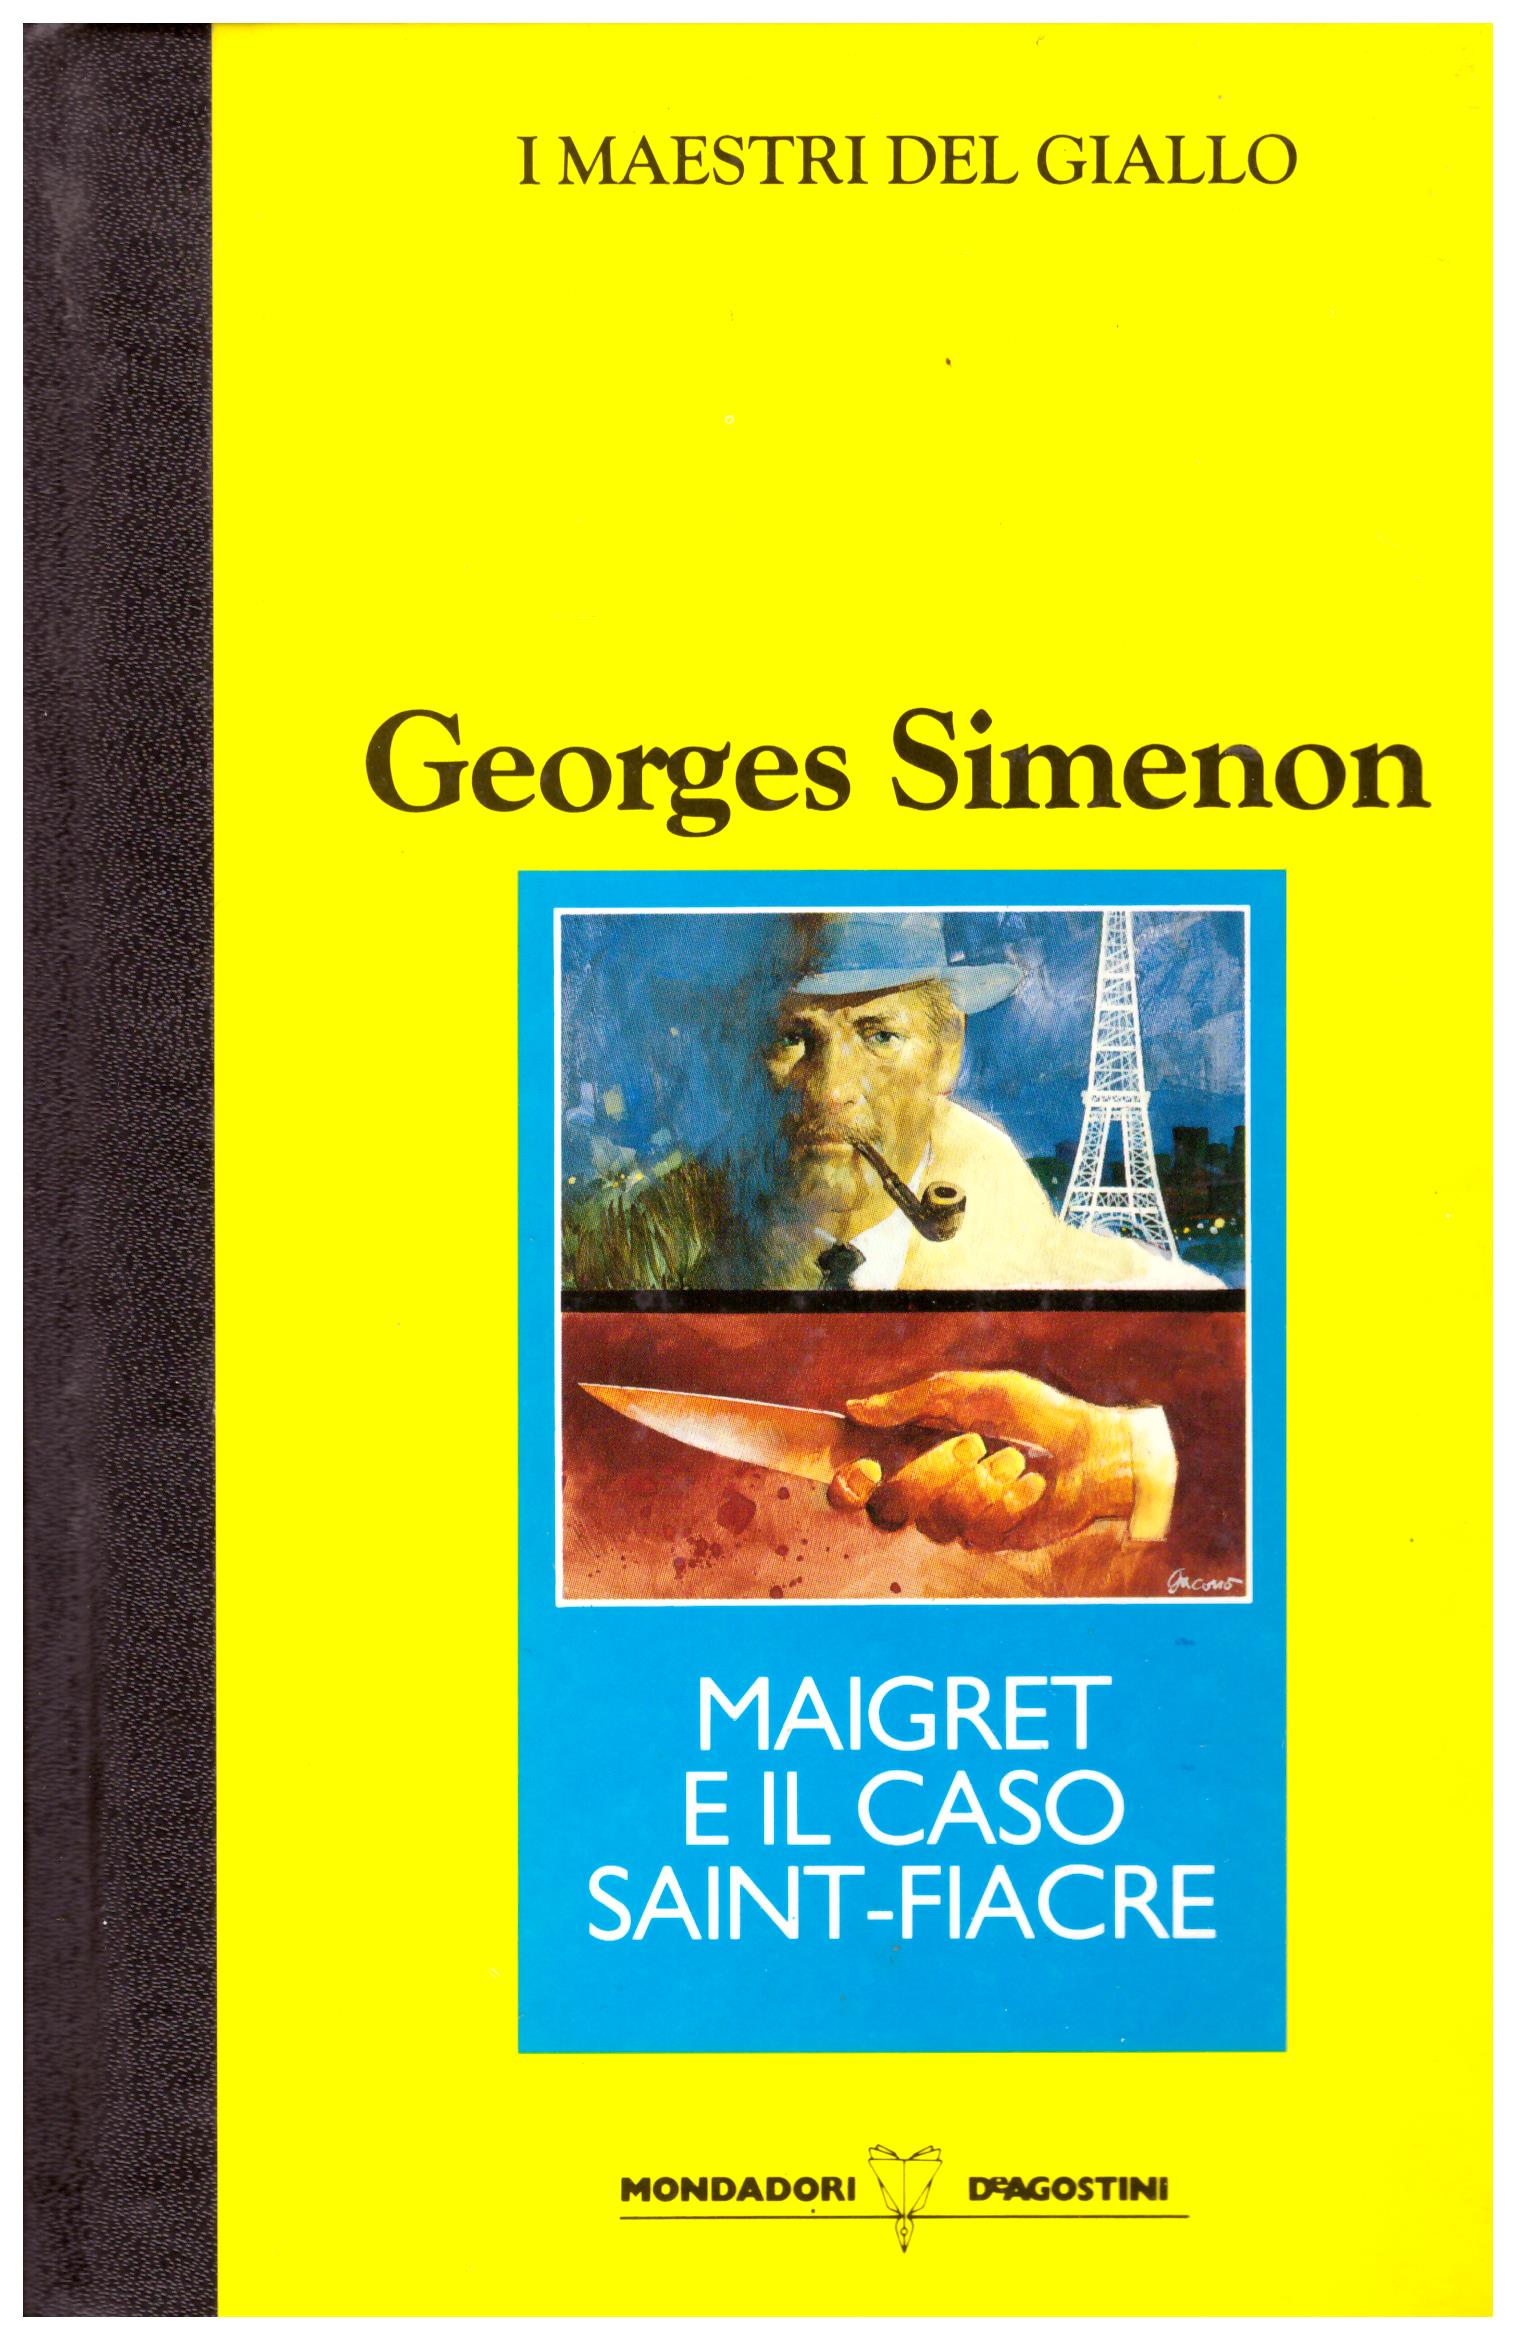 Titolo: Maigret e il caso Saint-Fiacre Autore: Georges Simenon Editore: Mondadori-DeAgostini, 1990